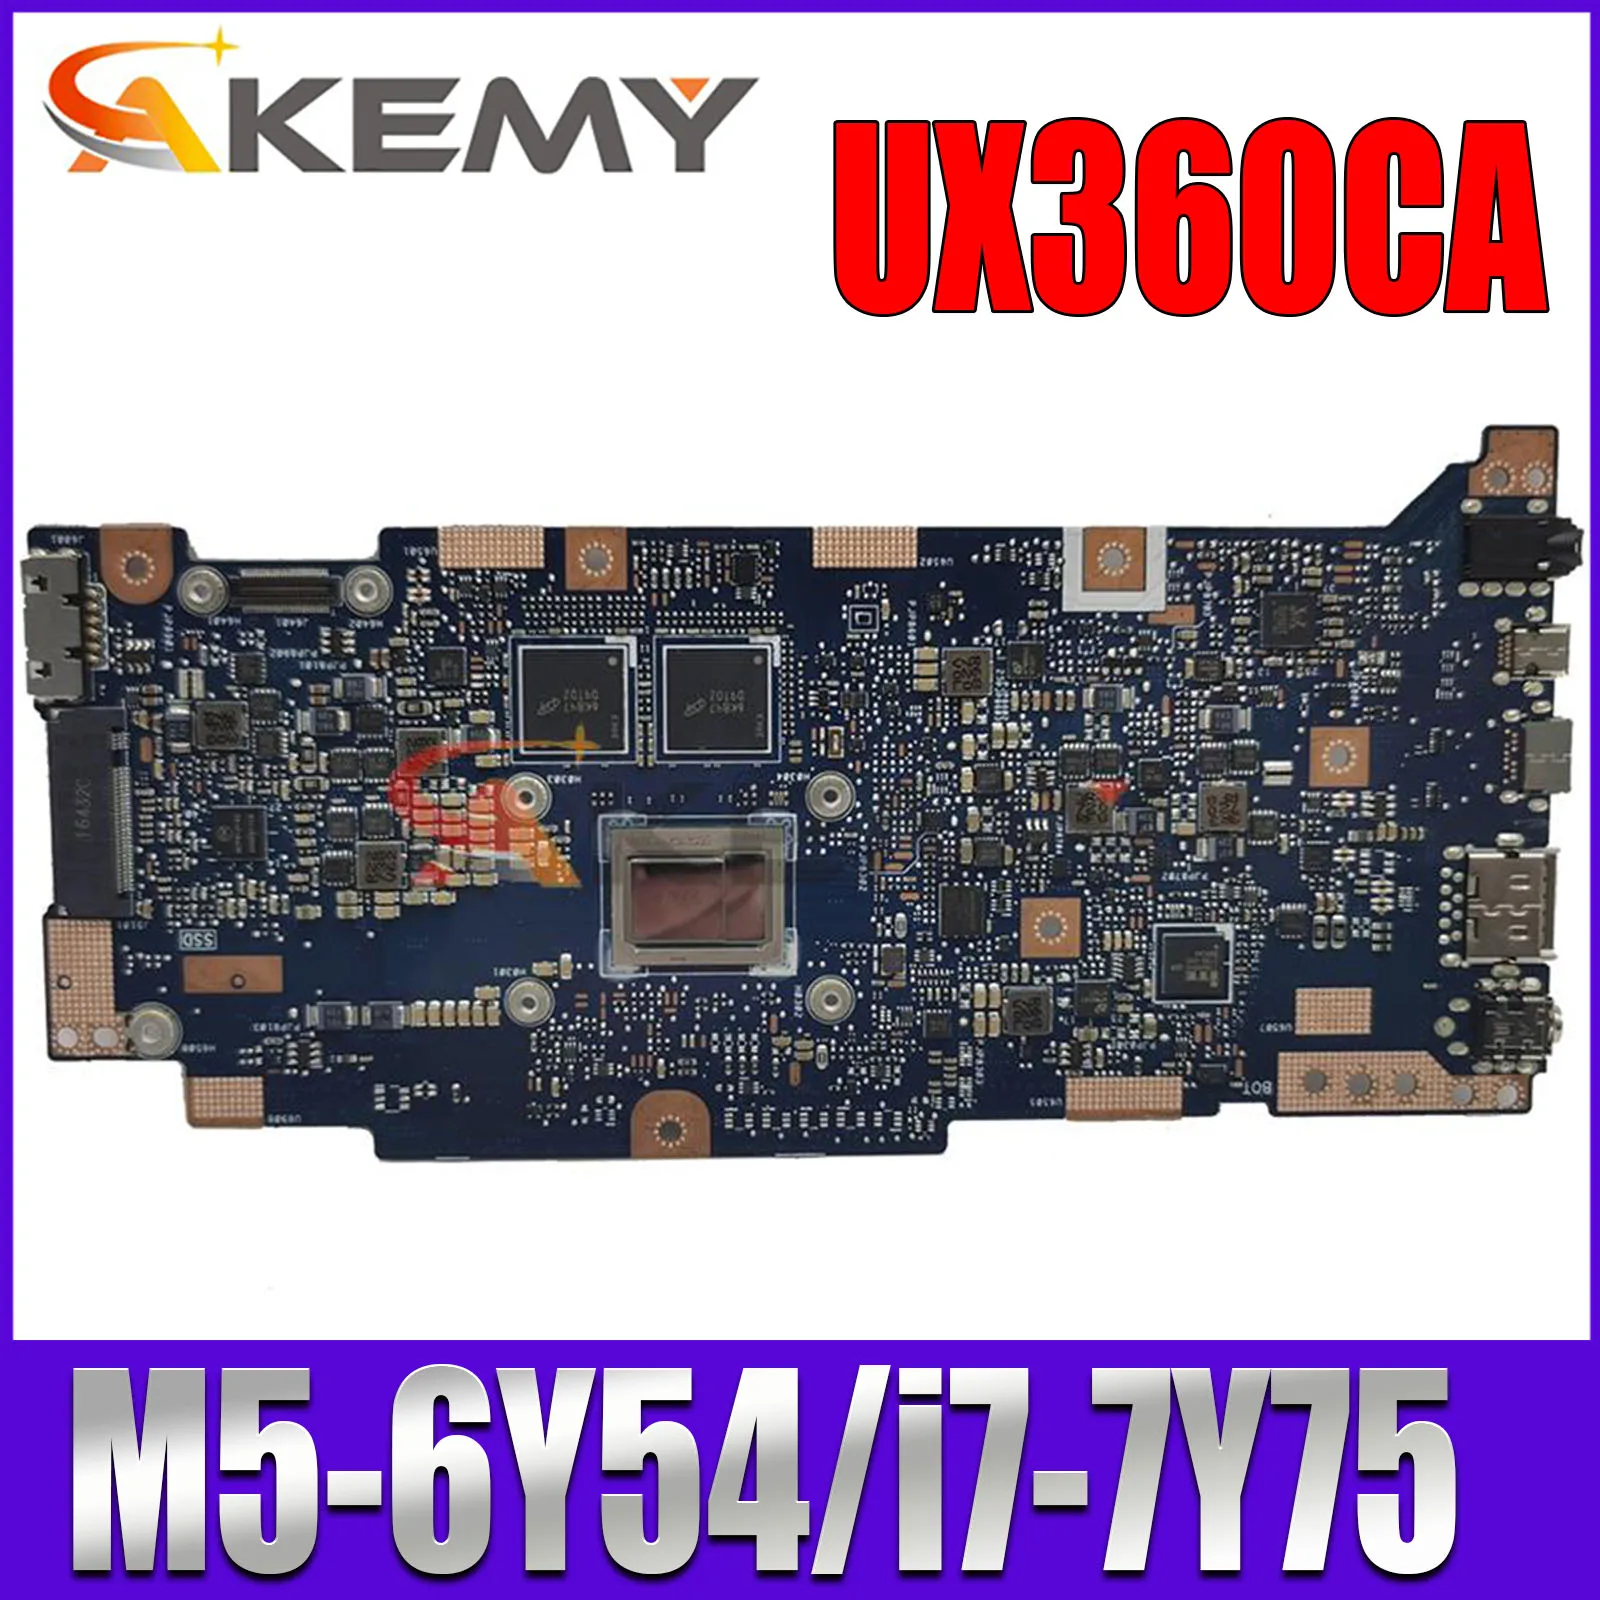 

UX360CAK Laptop Motherboard M3-6Y30 M5-6Y54 i5-7Y54 M7-6Y75 i7-7Y75 CPU 4GB 8GB RAM for ASUS UX360C UX360CA UX360CAK Mainboard